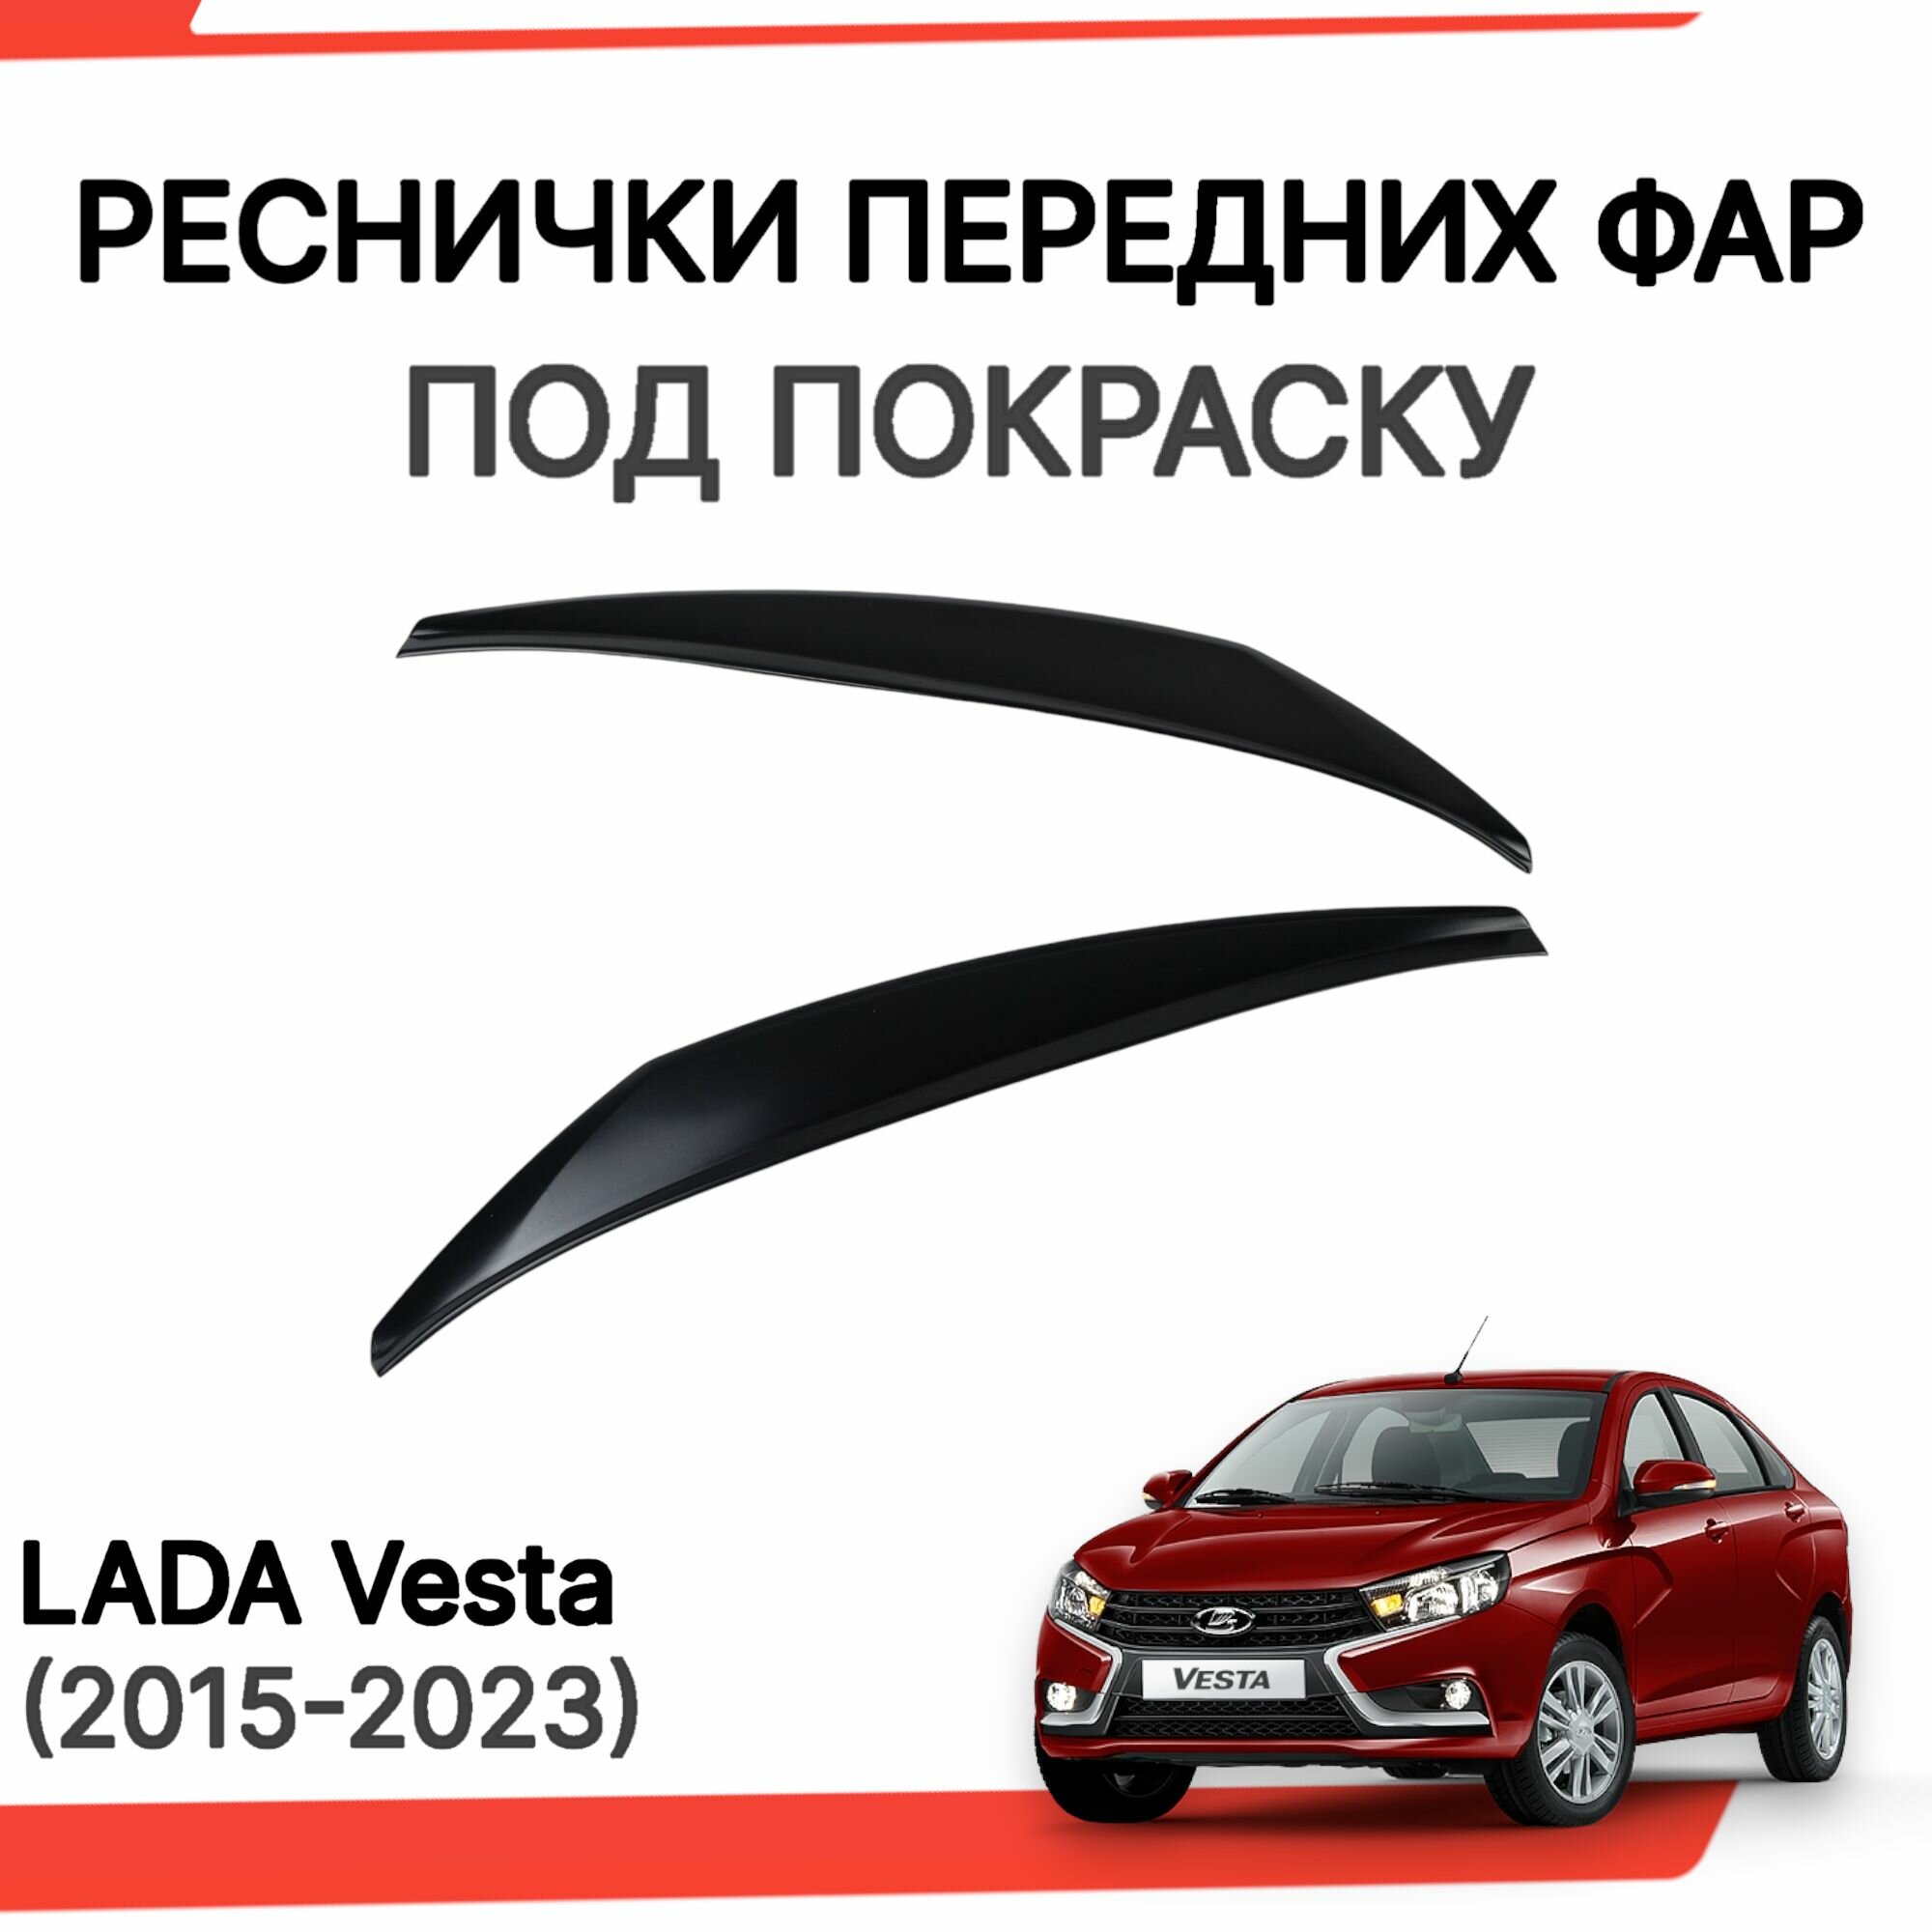 Реснички передних фар (прямые широкие) для Лада Веста Lada Vesta